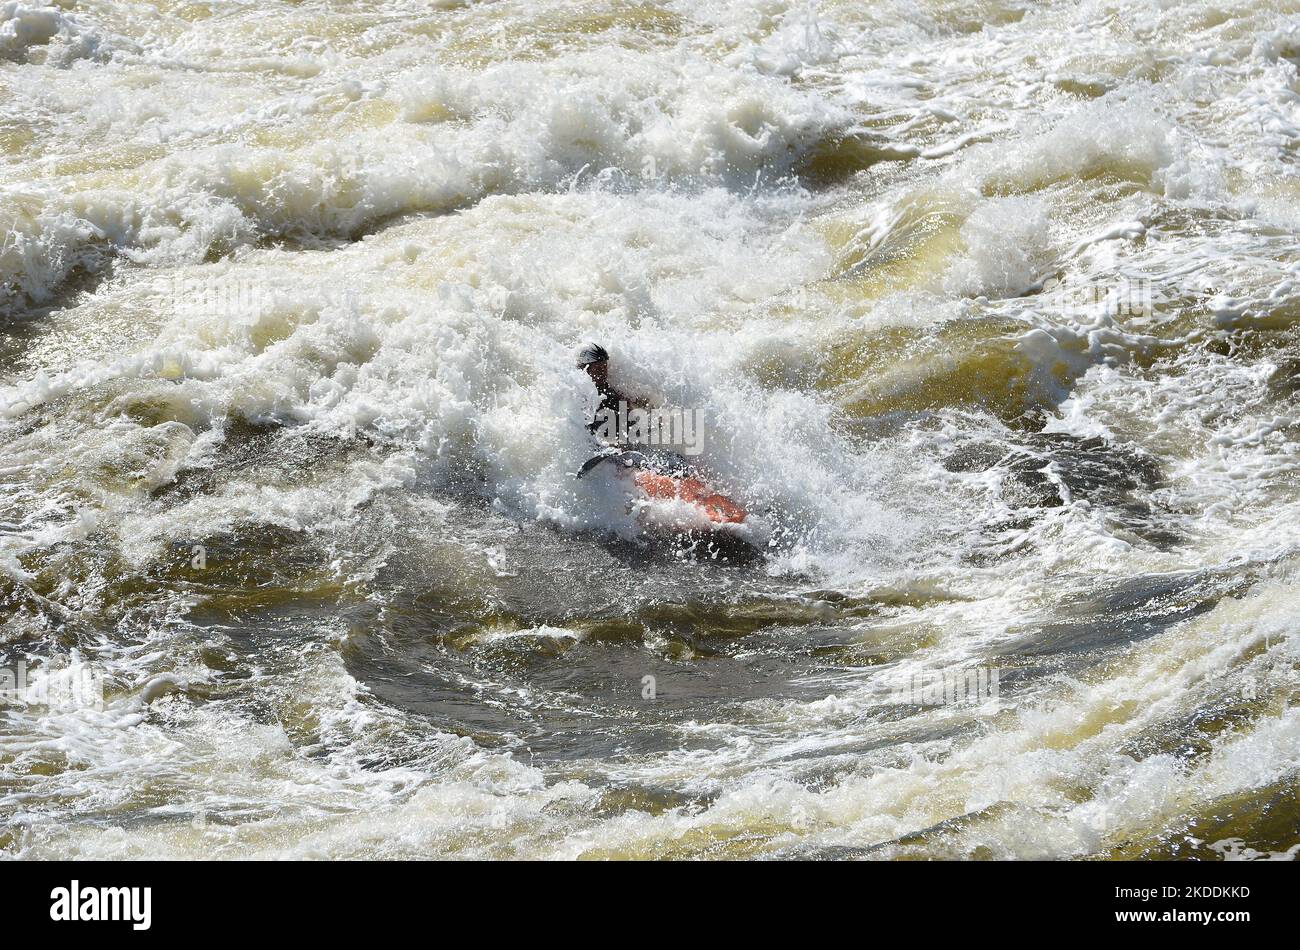 Kajakfahren in sehr rauen Stromschnellen. Der Fluss ist heftig mit vielen turbulenten Wellen und Spray. Das Gesicht der Person im Kajak ist nicht erkennbar. Stockfoto